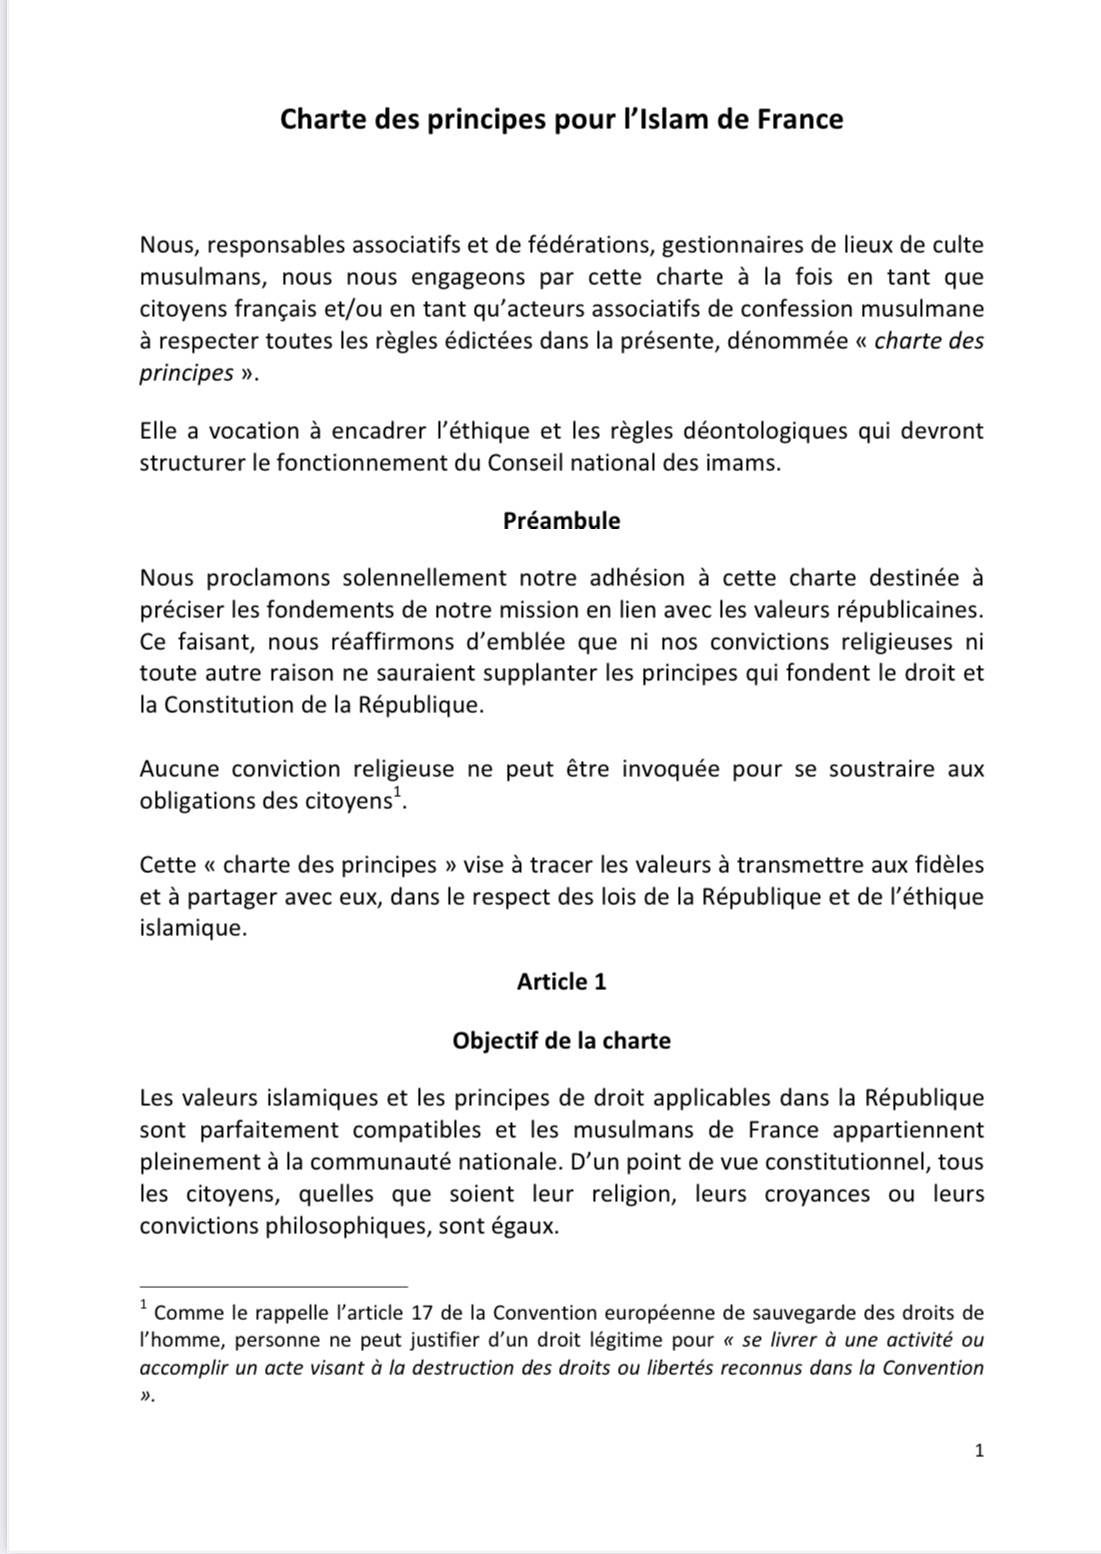 Présentation de la charte des principes pour l’islam de France au président de la République